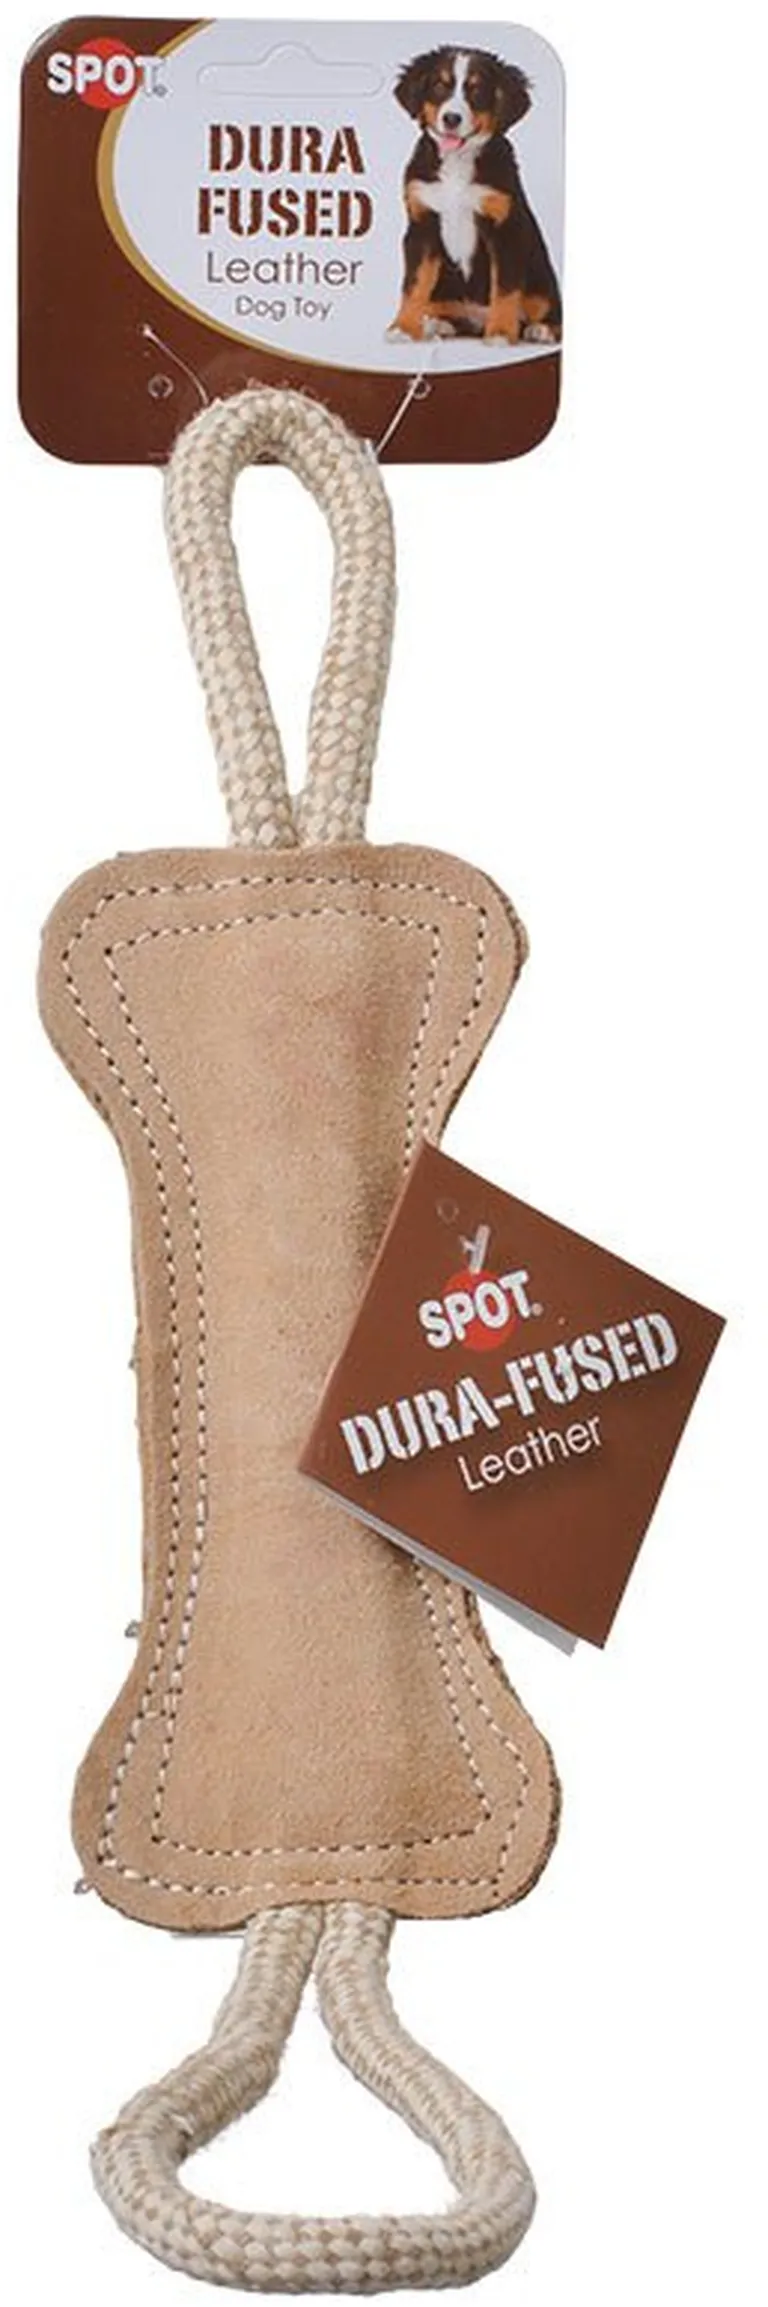 Spot Dura Fused Leather Bone Tug Dog Toy Photo 2